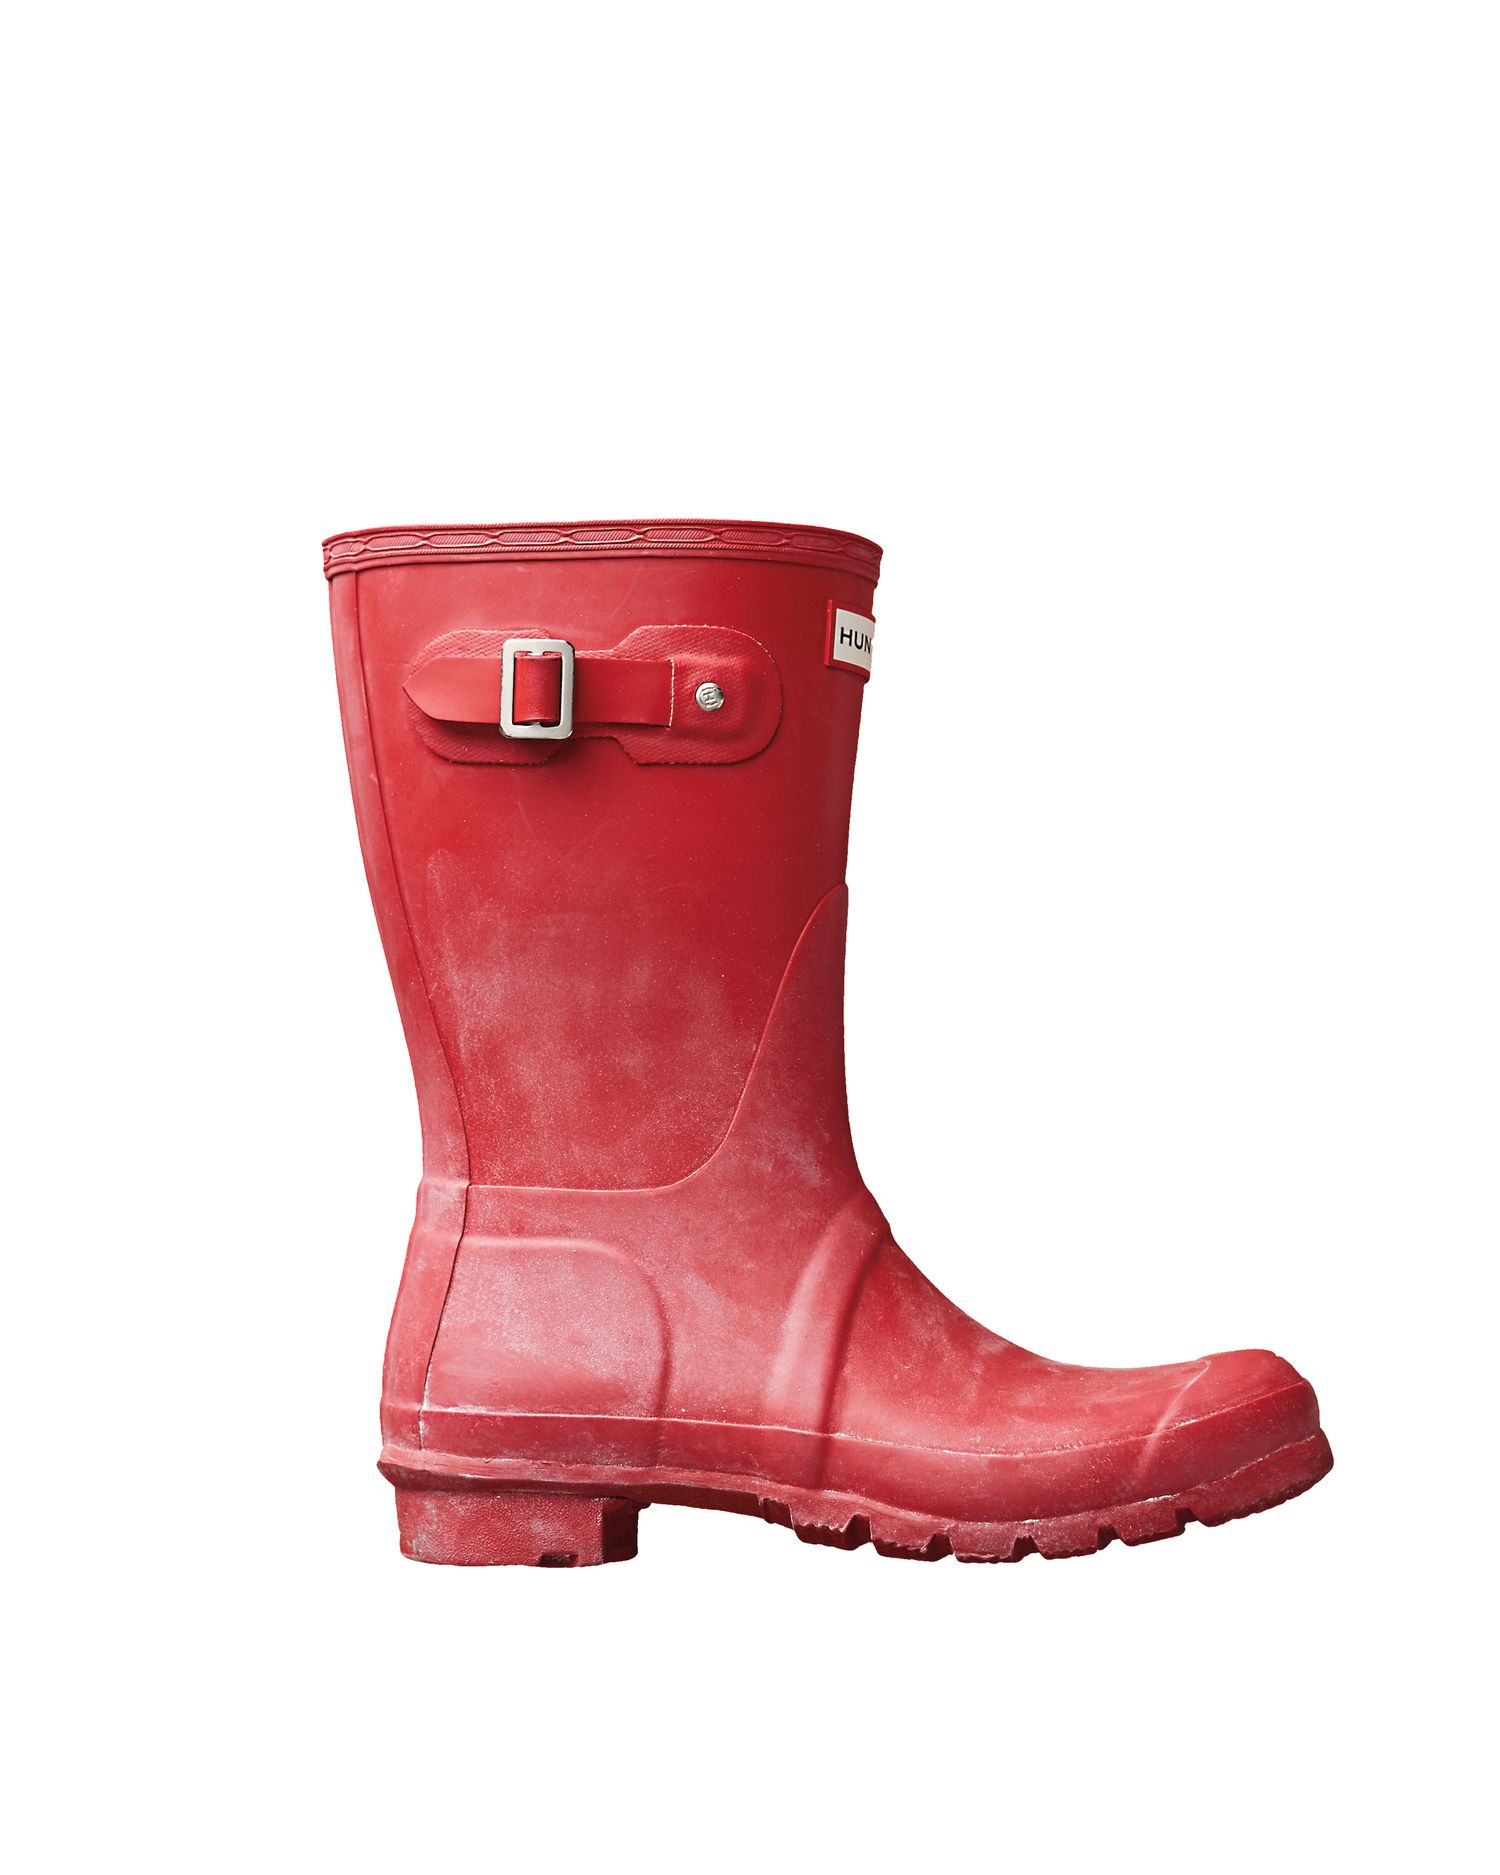 rubber-boots-mld110973-020.jpg